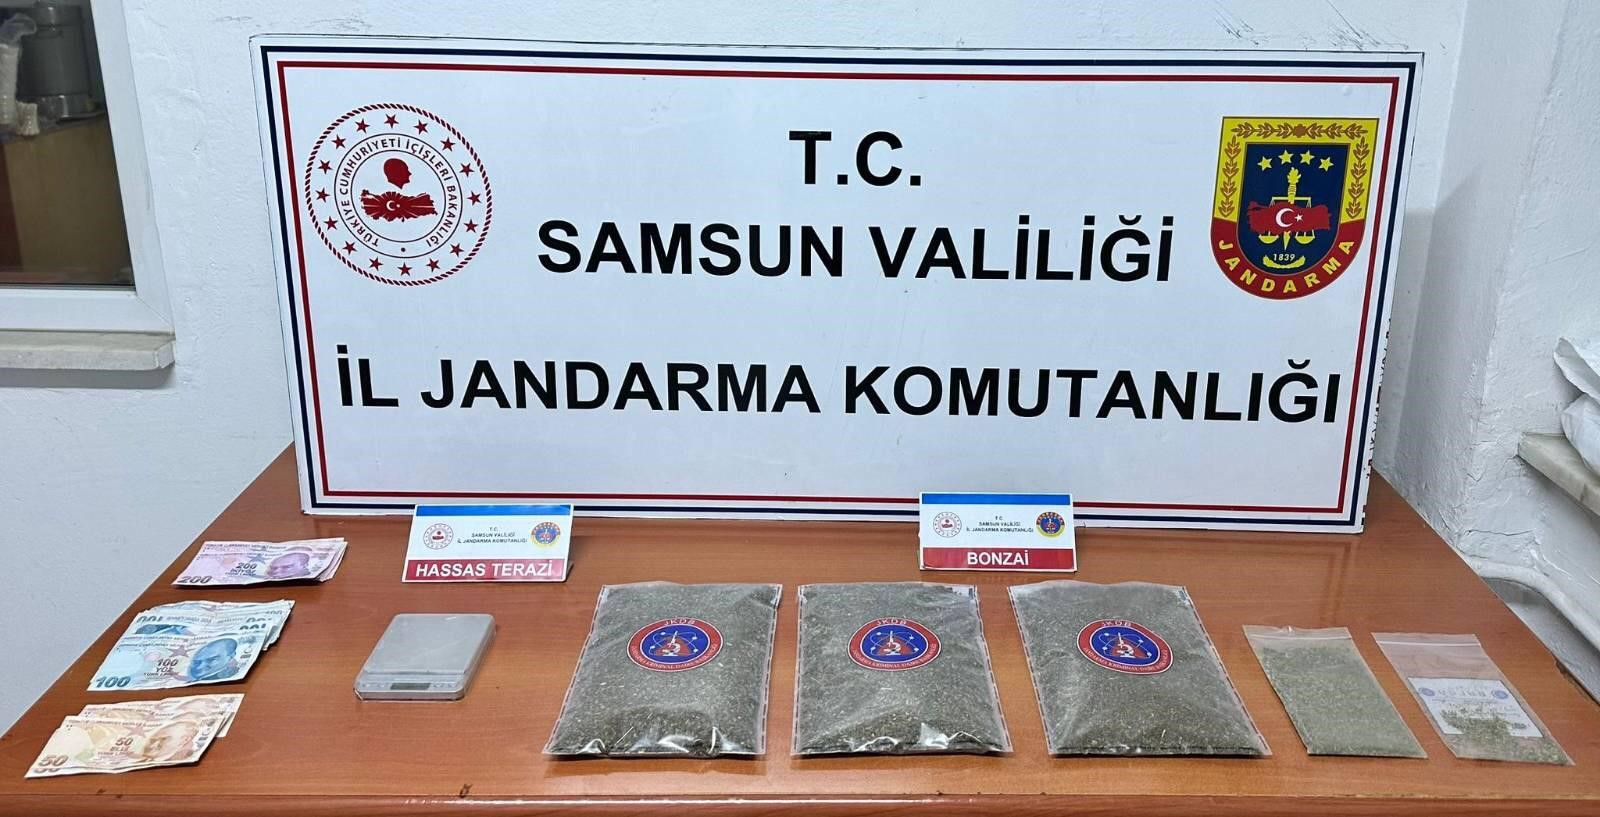 Samsun'da 1 kilo 50 gram bonzai ele geçirdi '1 gözaltı'